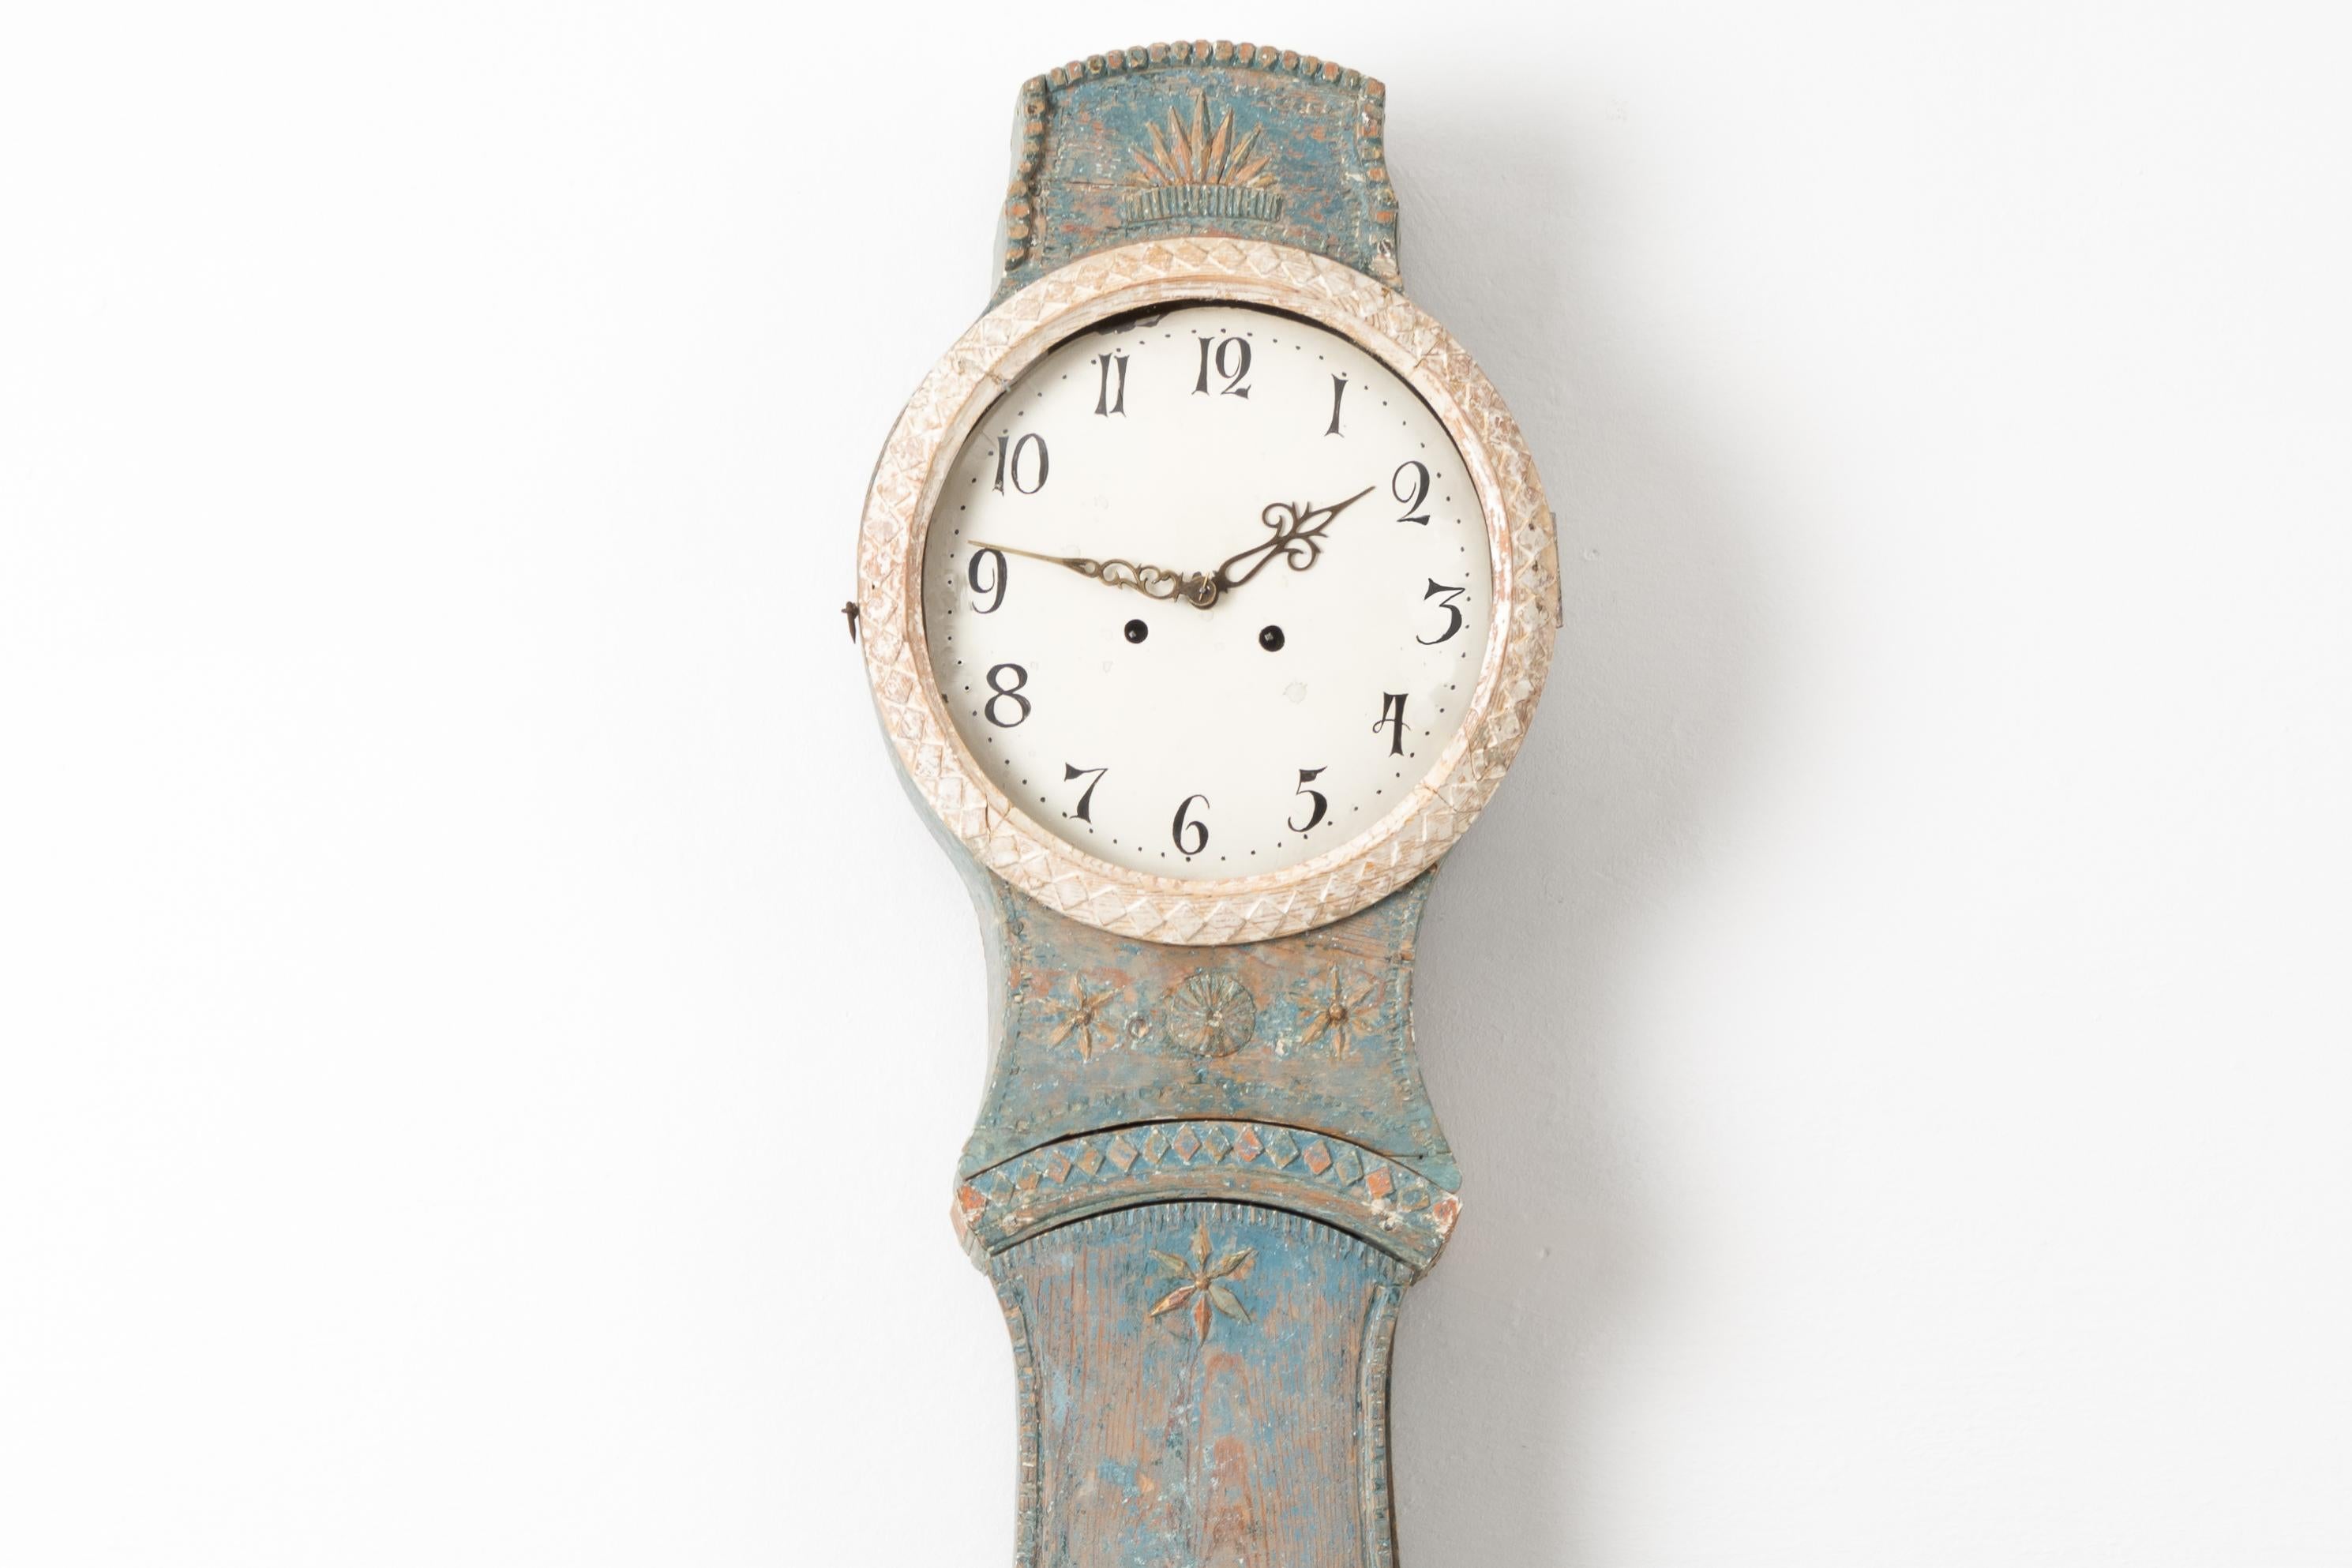 Ländliche Mora-Uhr im Rokoko-Stil aus Nordschweden. Die Uhr ist aus bemalter Kiefer gefertigt und stammt aus der ersten Hälfte des 19. Jahrhunderts, etwa 1820 bis 1830. Die blaue Farbe ist ein Original aus den frühen 1800er Jahren. Verziert mit